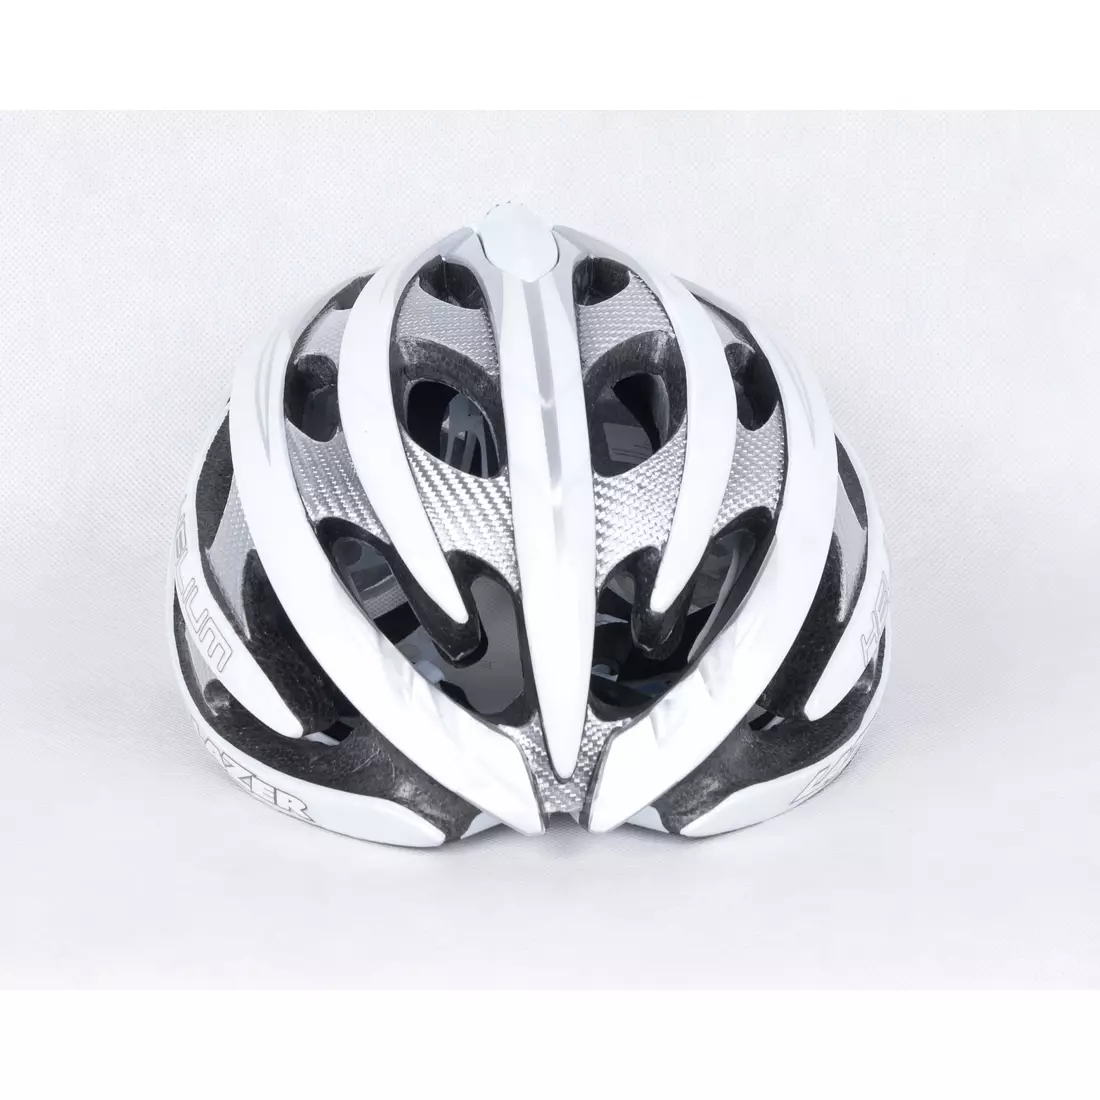 LAZER HELIUM road bicycle helmet, silver